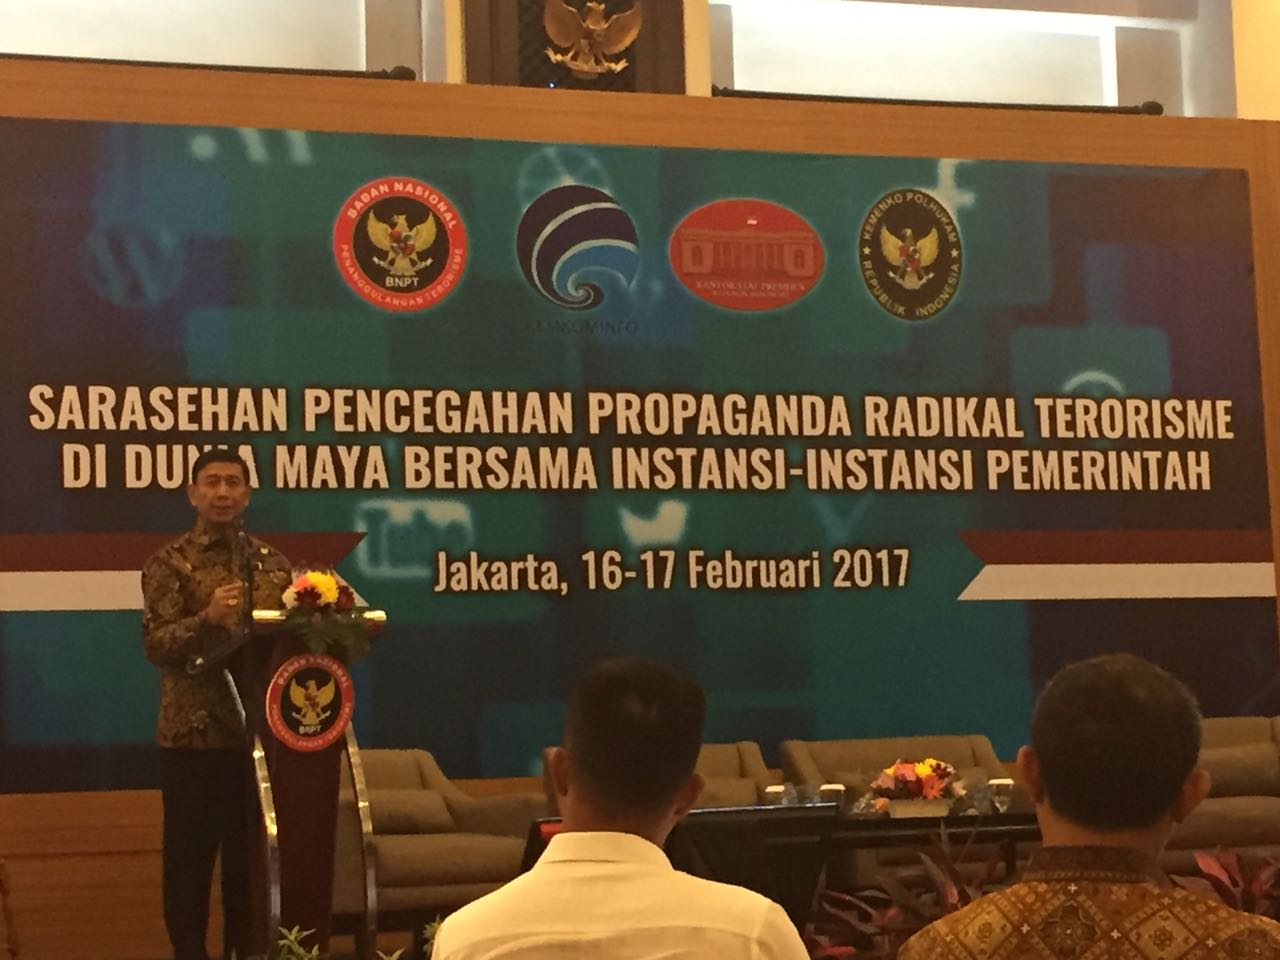 Menko Polhukam membuka acara Sarasehan Pencegahan Propaganda Radikal Terorisme di Hotel Royal, Jakarta, Kamis (16/2) pagi. (Foto: Edi N./Humas)